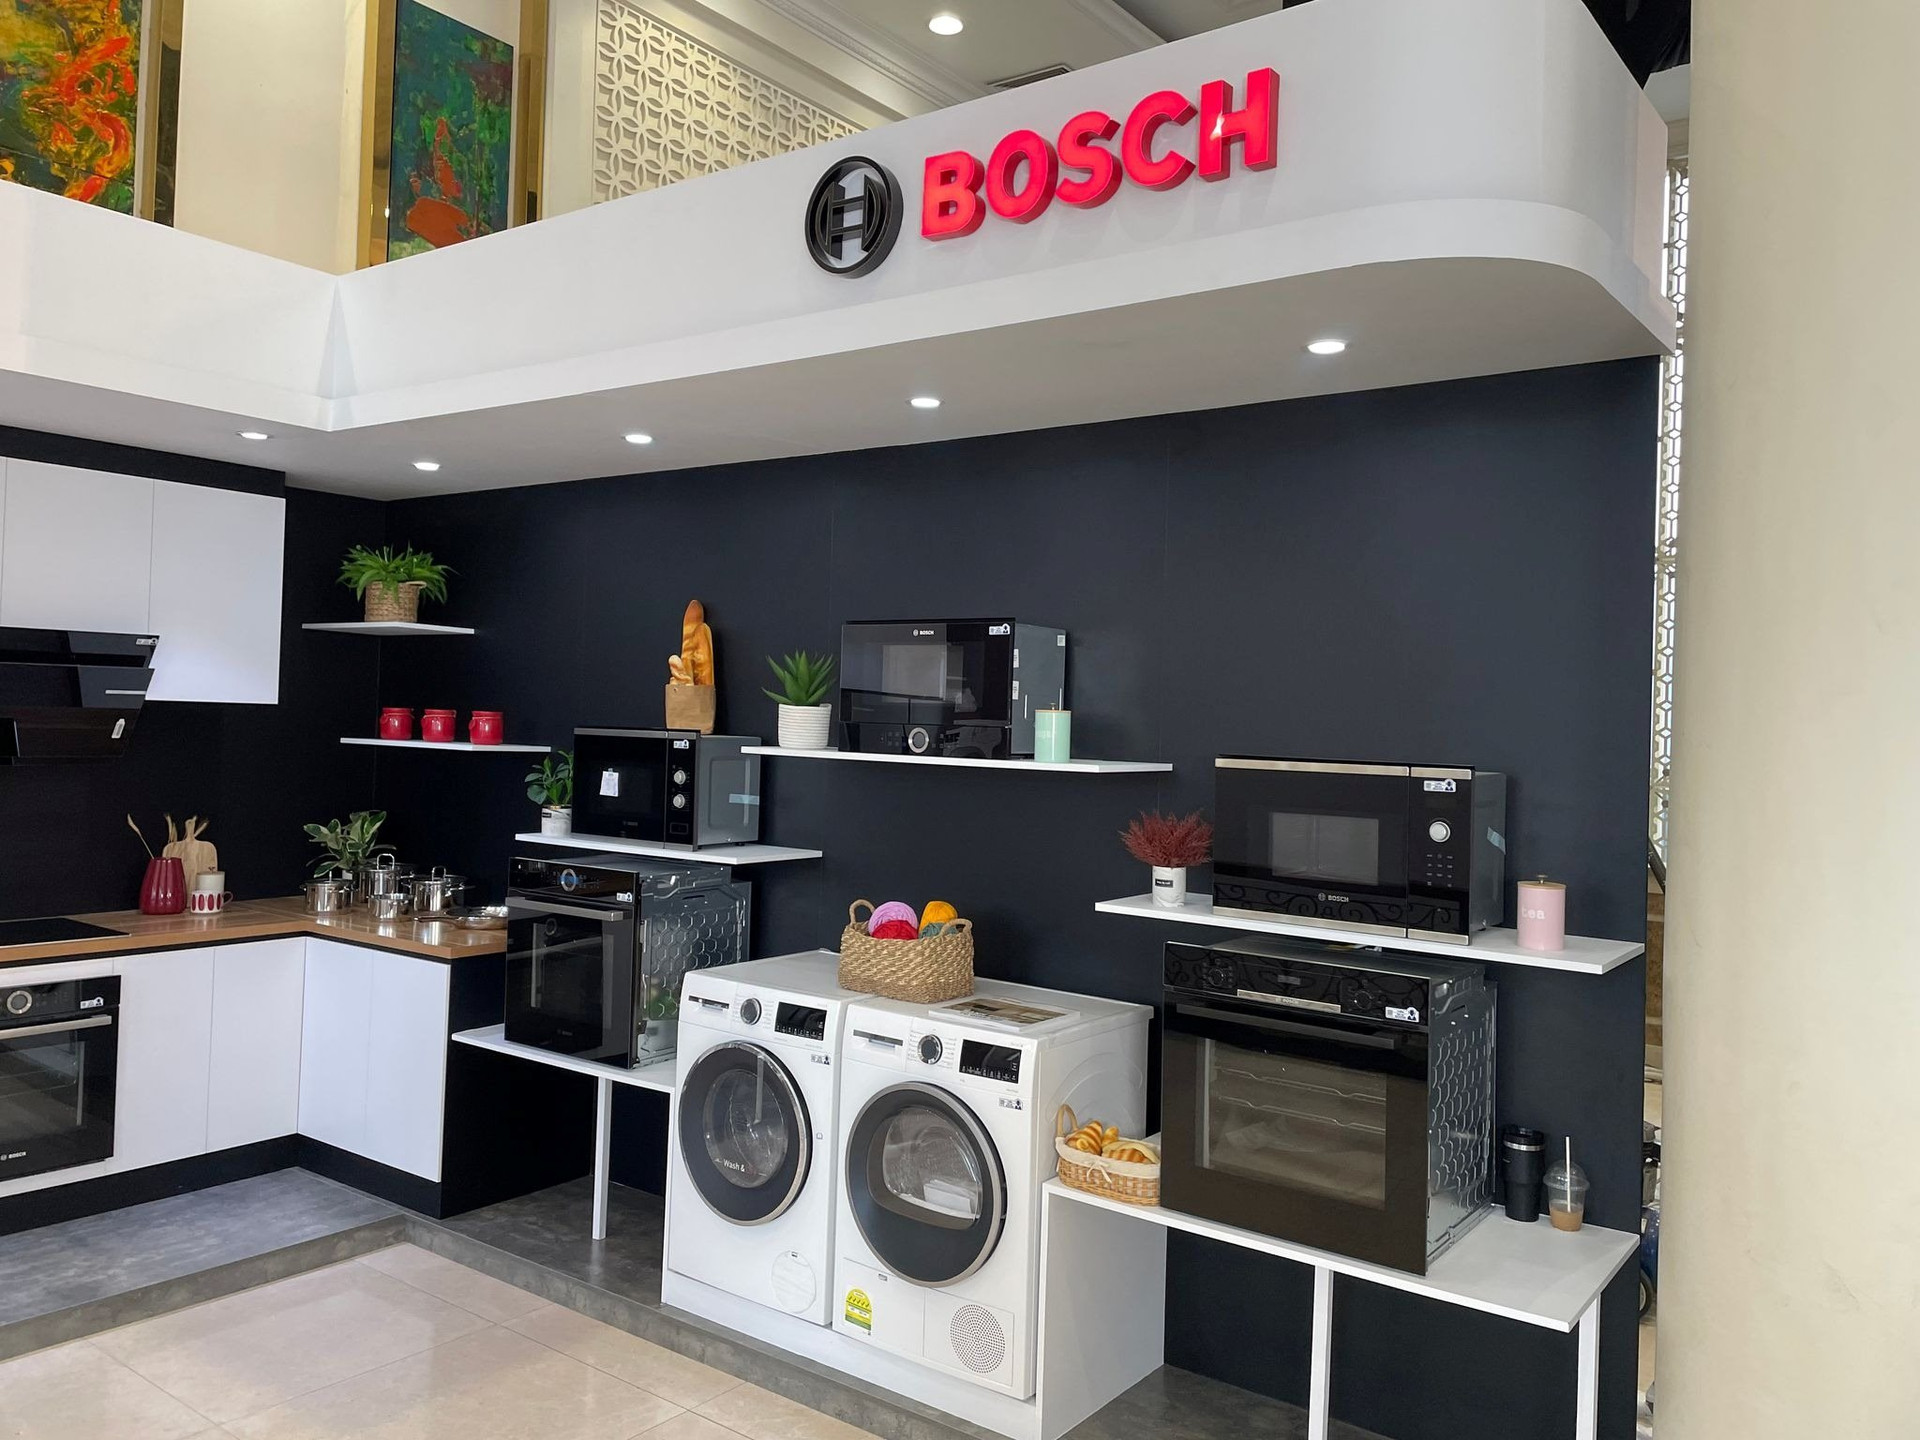 Sếp Bosch: ’25 triệu hộ dân, chỉ 1% có máy rửa bát, thị trường Việt Nam quá tiềm năng’ - Ảnh 1.